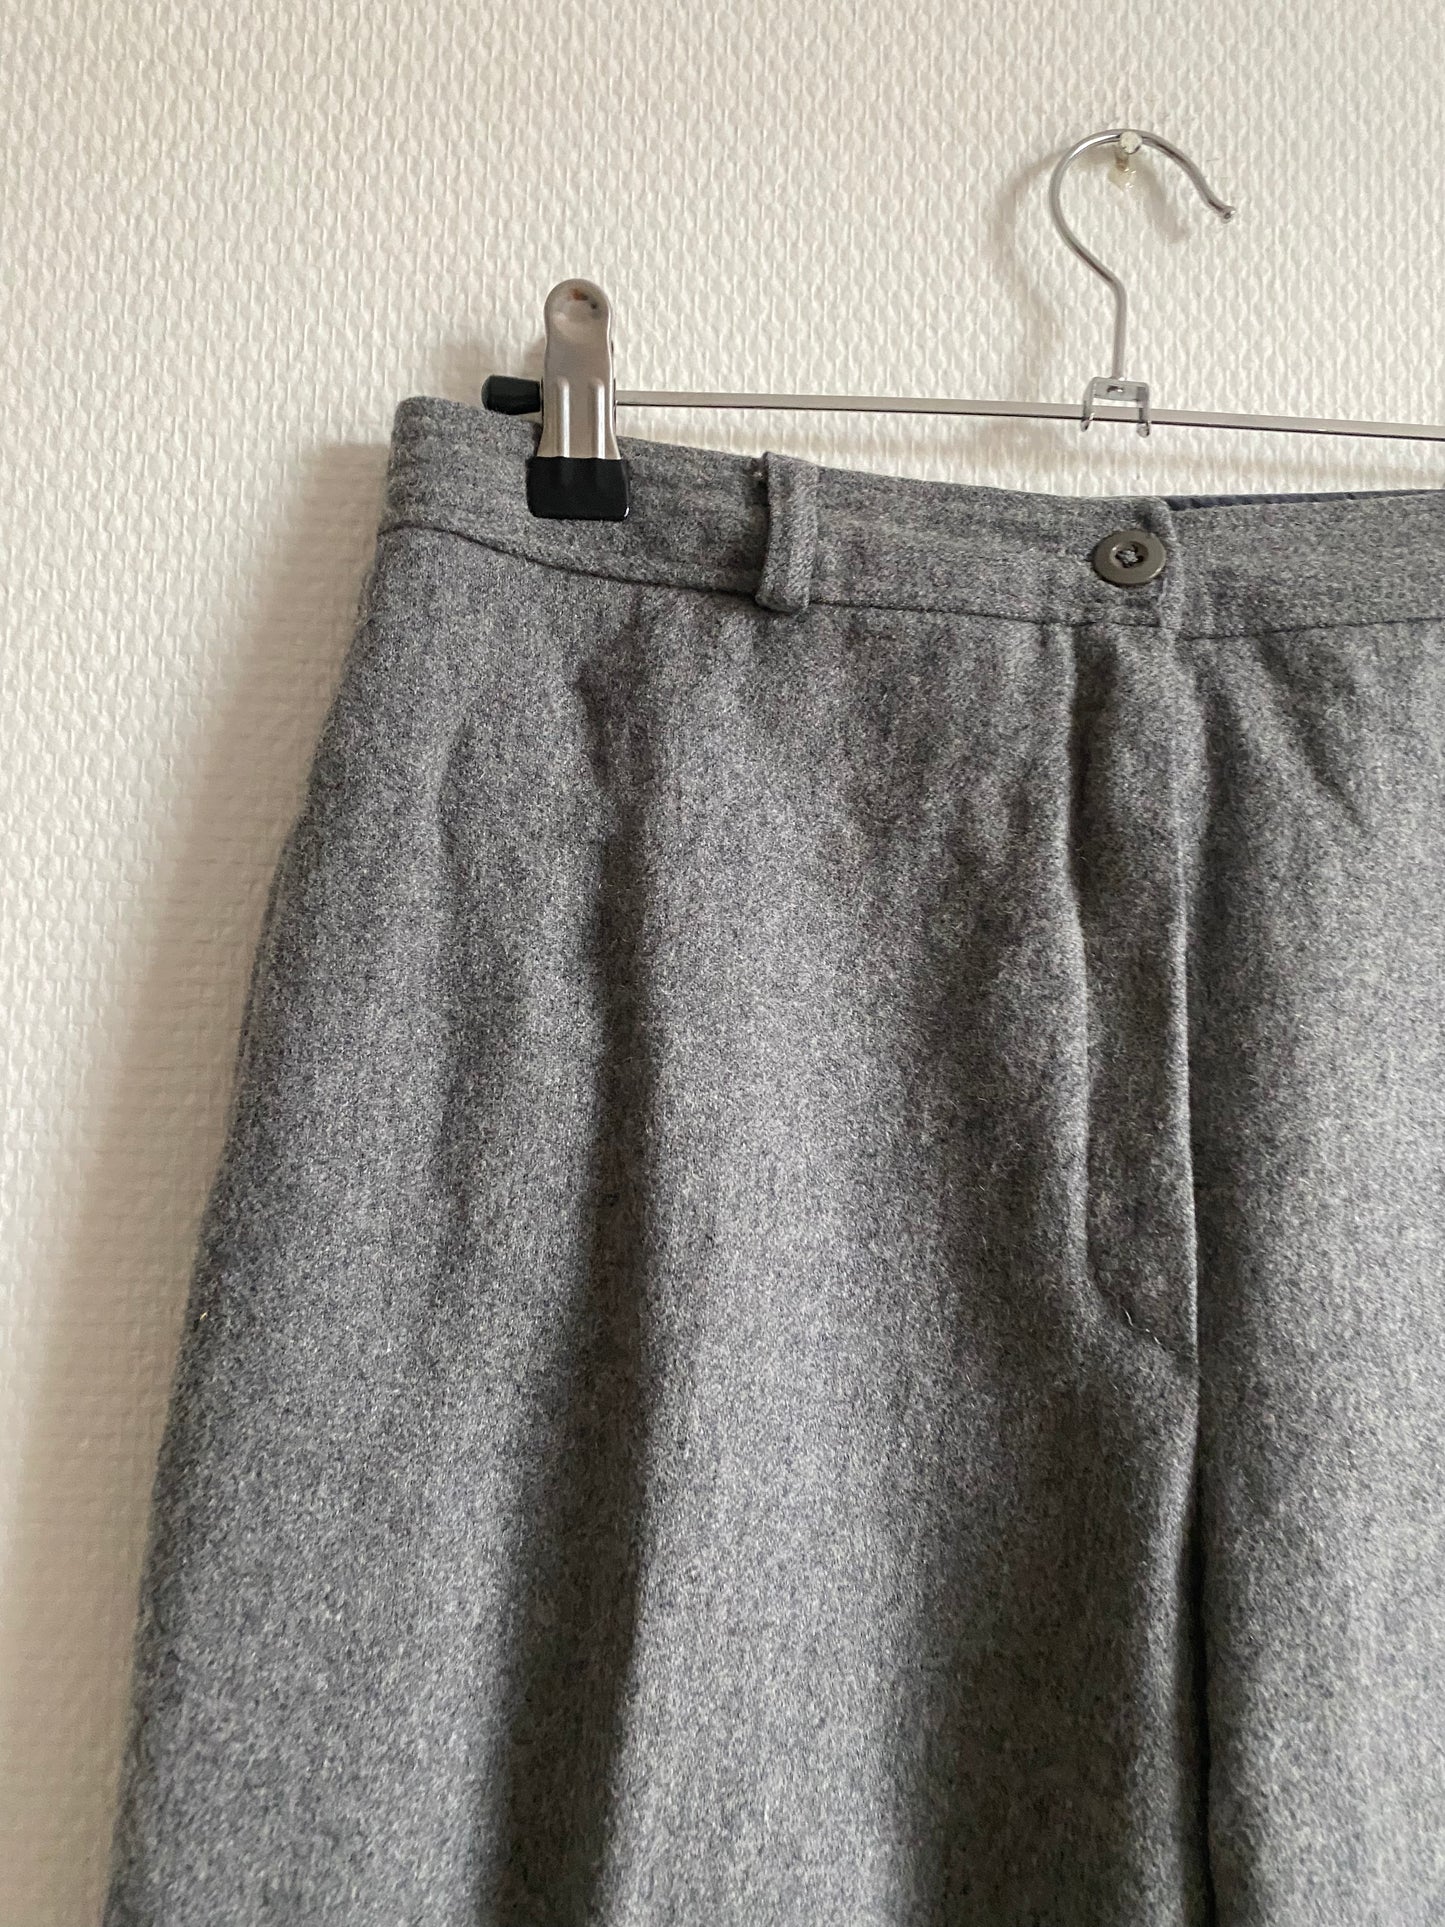 Pantalon gris Peroche